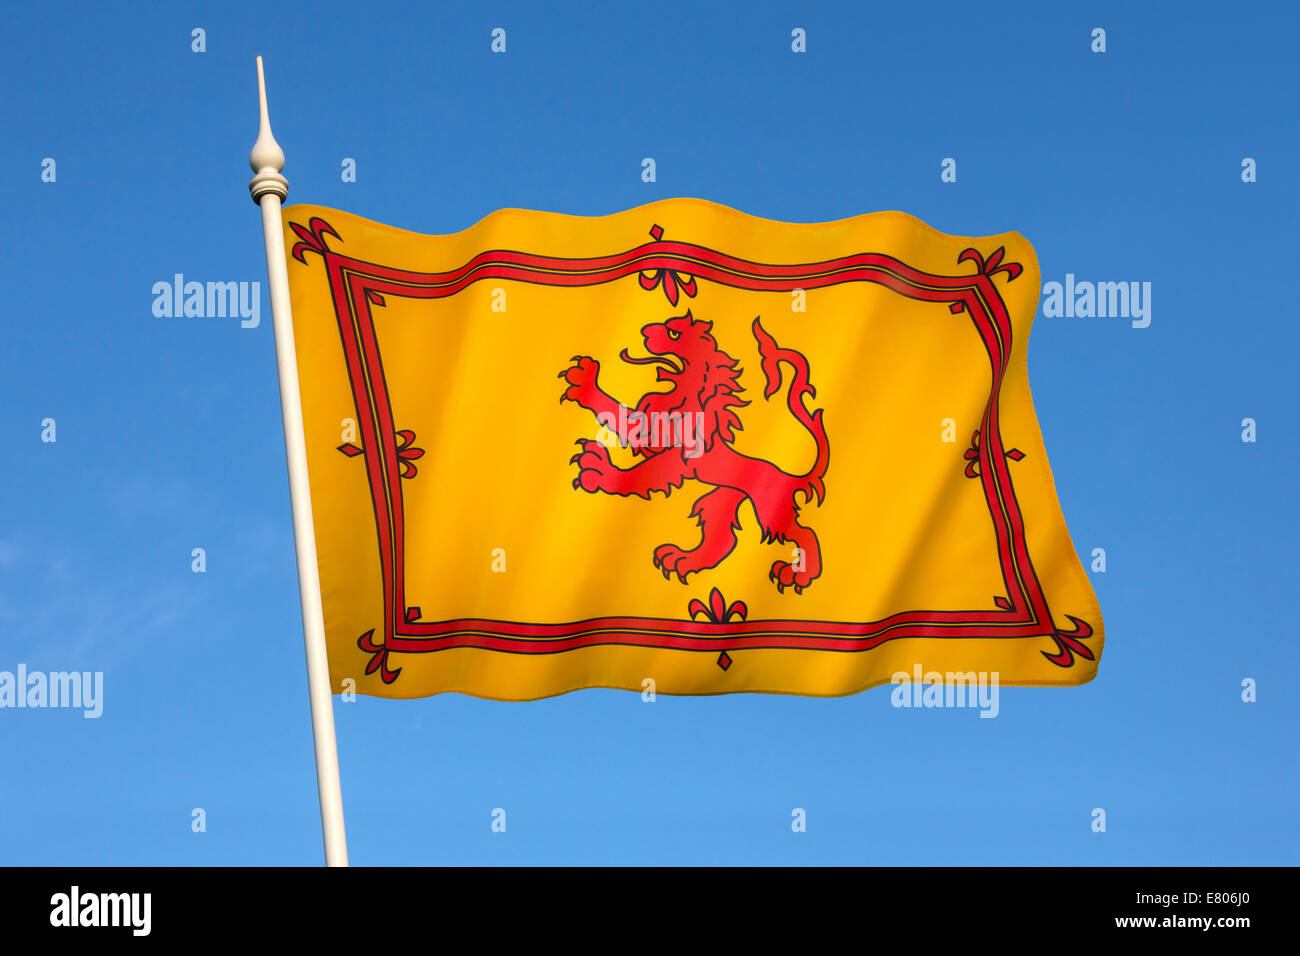 L'étendard royal d'Écosse, aussi connu sous la bannière du roi des Écossais, ou plus communément le lion rampant de l'Ecosse. Banque D'Images